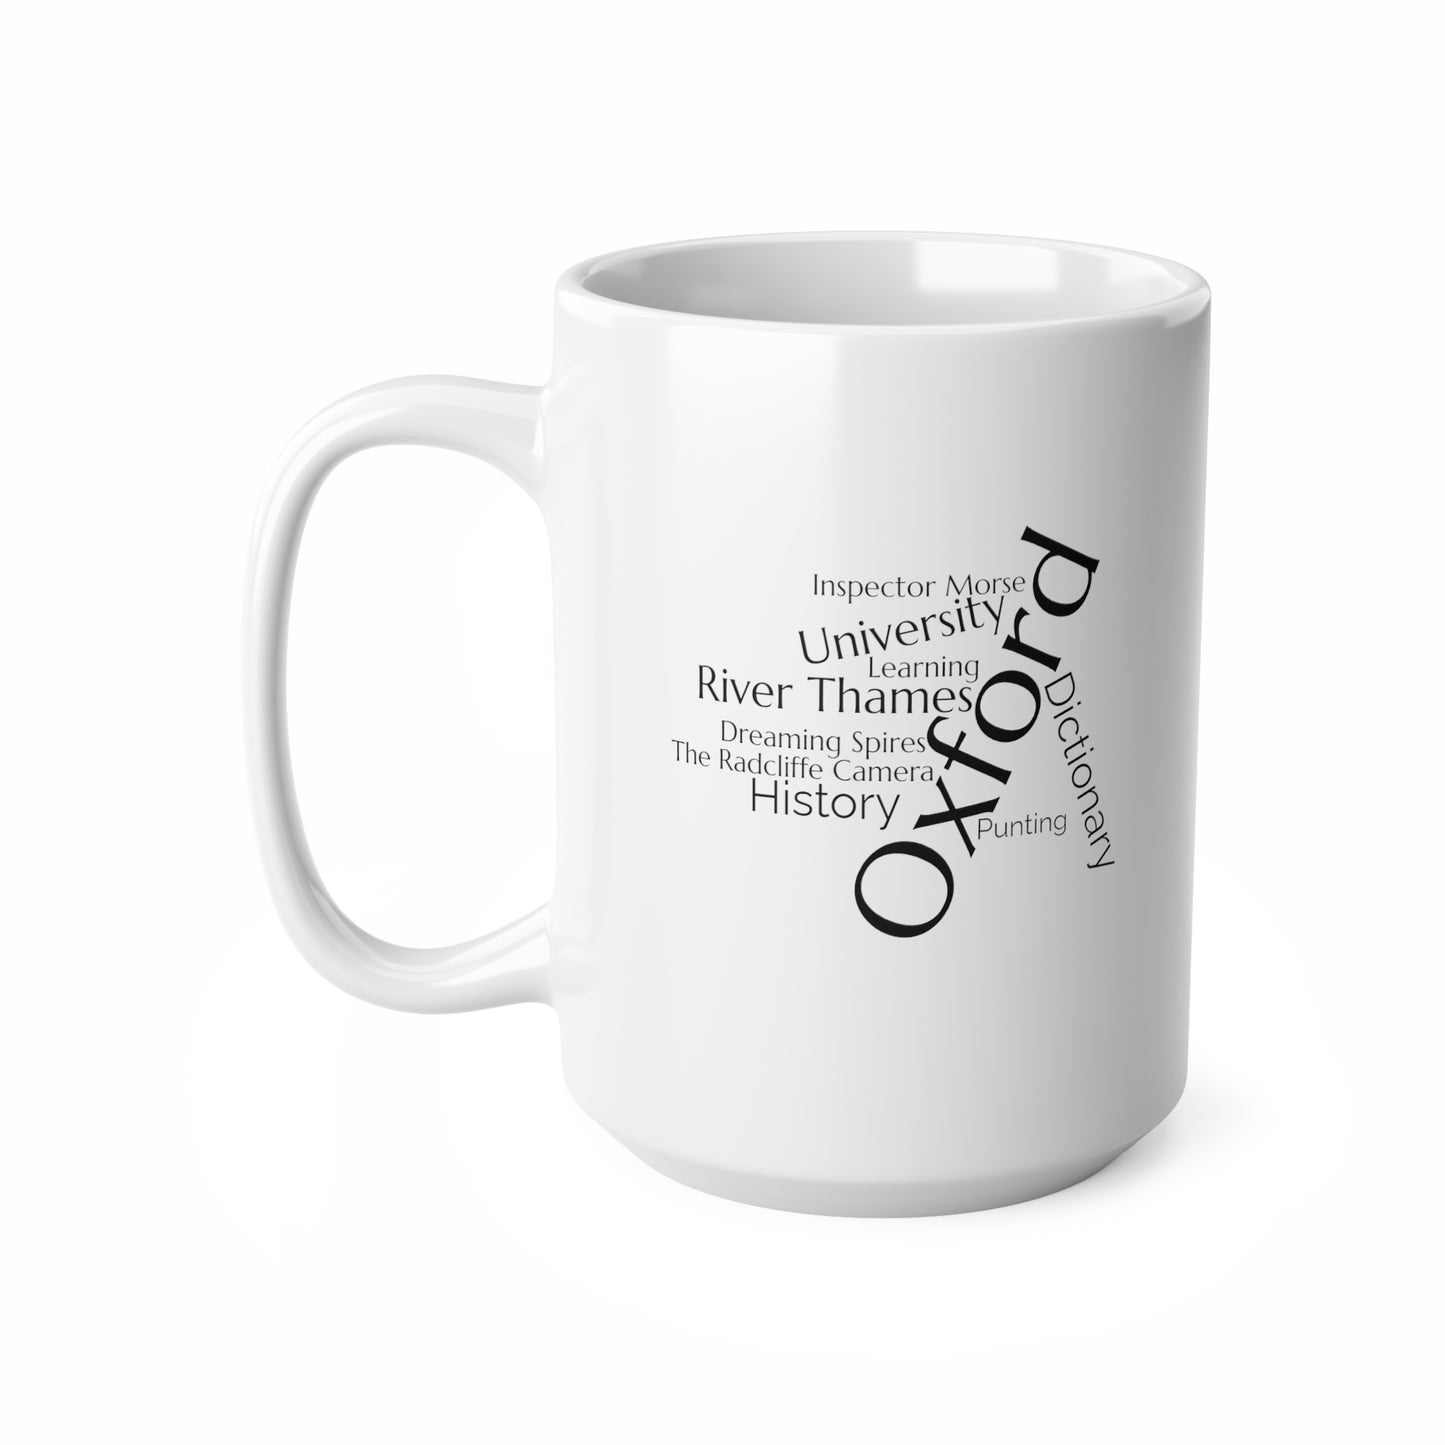 Oxford word mug, local mug, geography mug, gift, mug, coffee cup, word mug, wordcloud mug, christmas gift, birthday gift